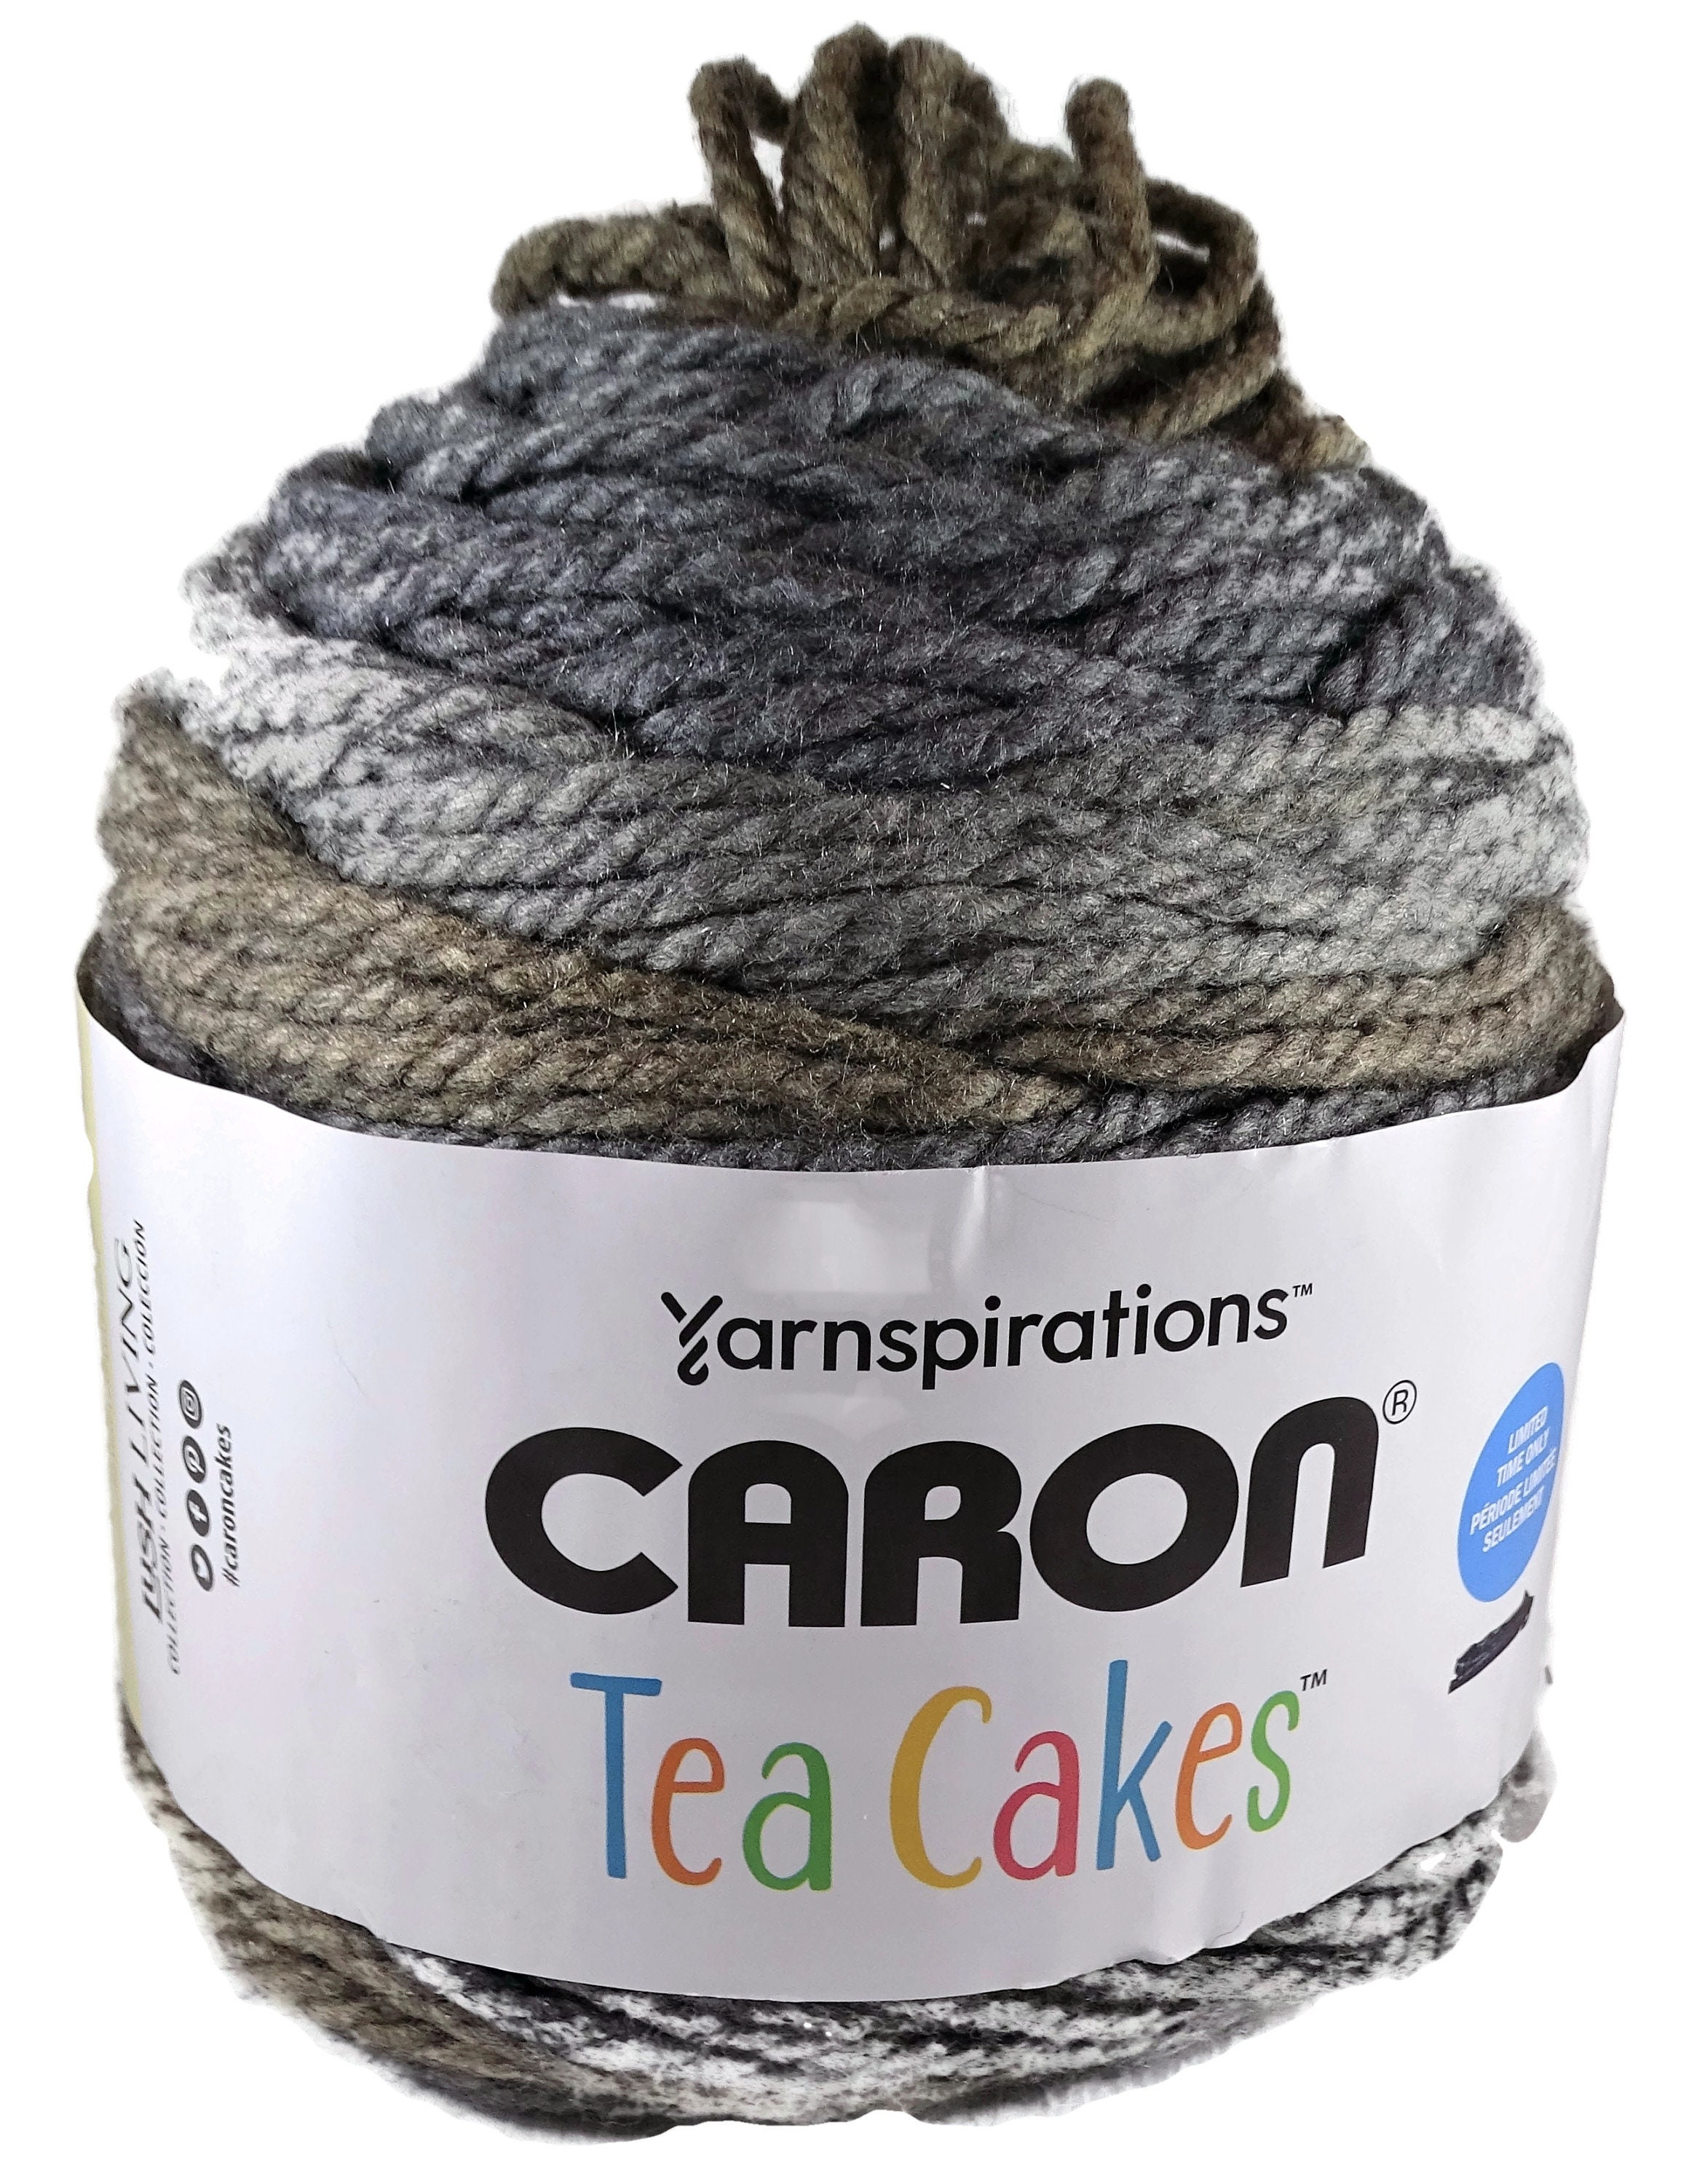 Pack de 2 pelotas Caron Tea Cakes 240 g cada bola de Hibiscus 